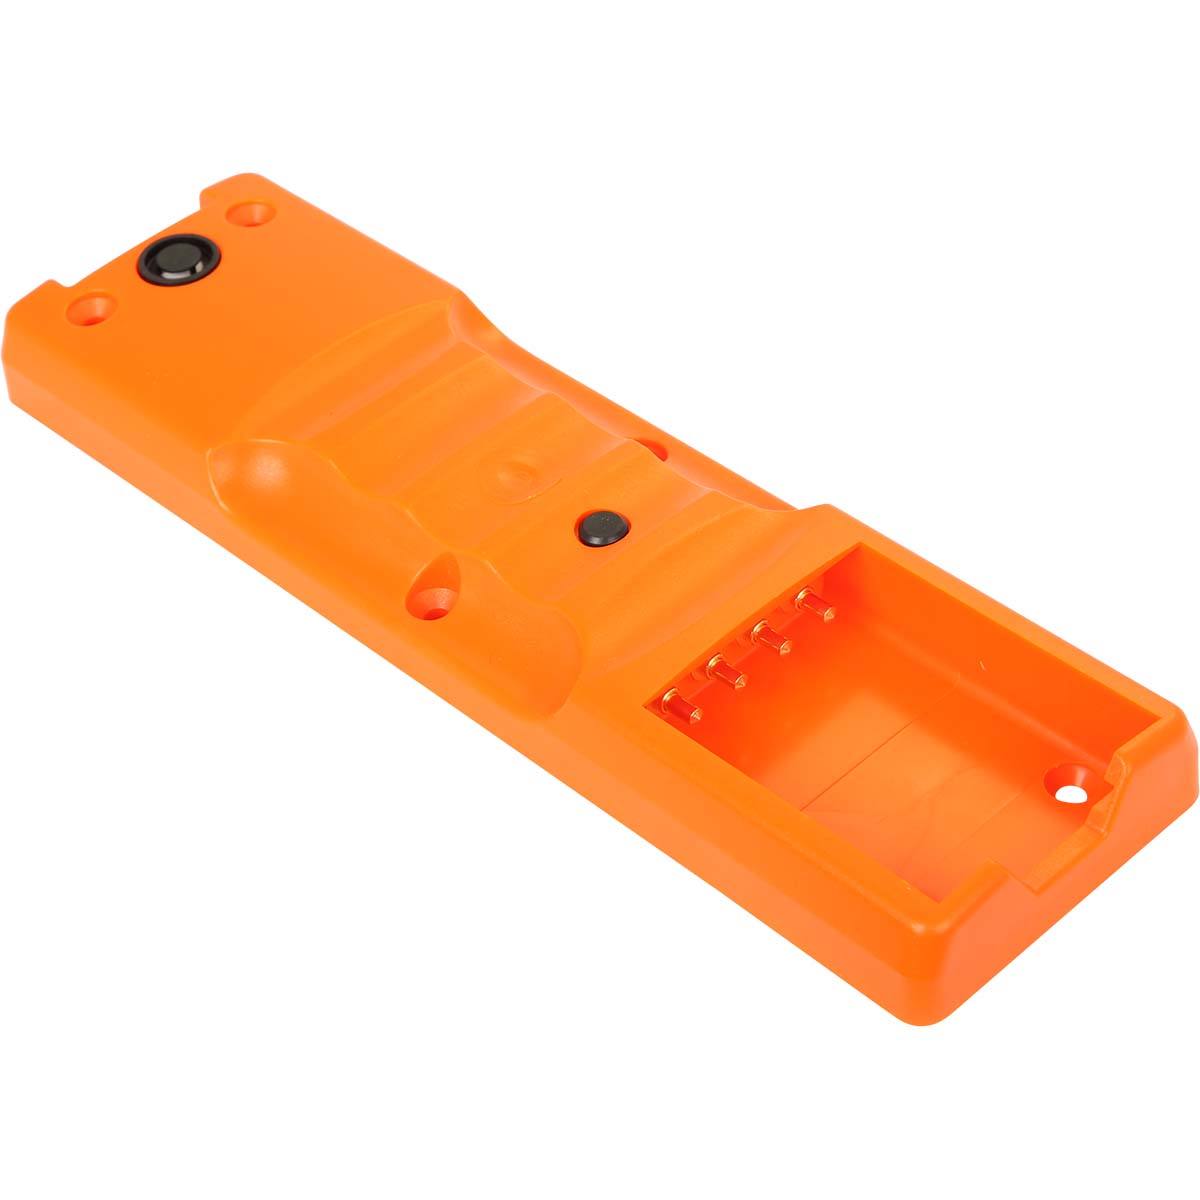 Sendergehäuse Unterteil micron 4, 5 iLOG, 6, 7, orange, für BA223___ IR Fenster mit Loch für Hidden-Switch und Verdrahtung